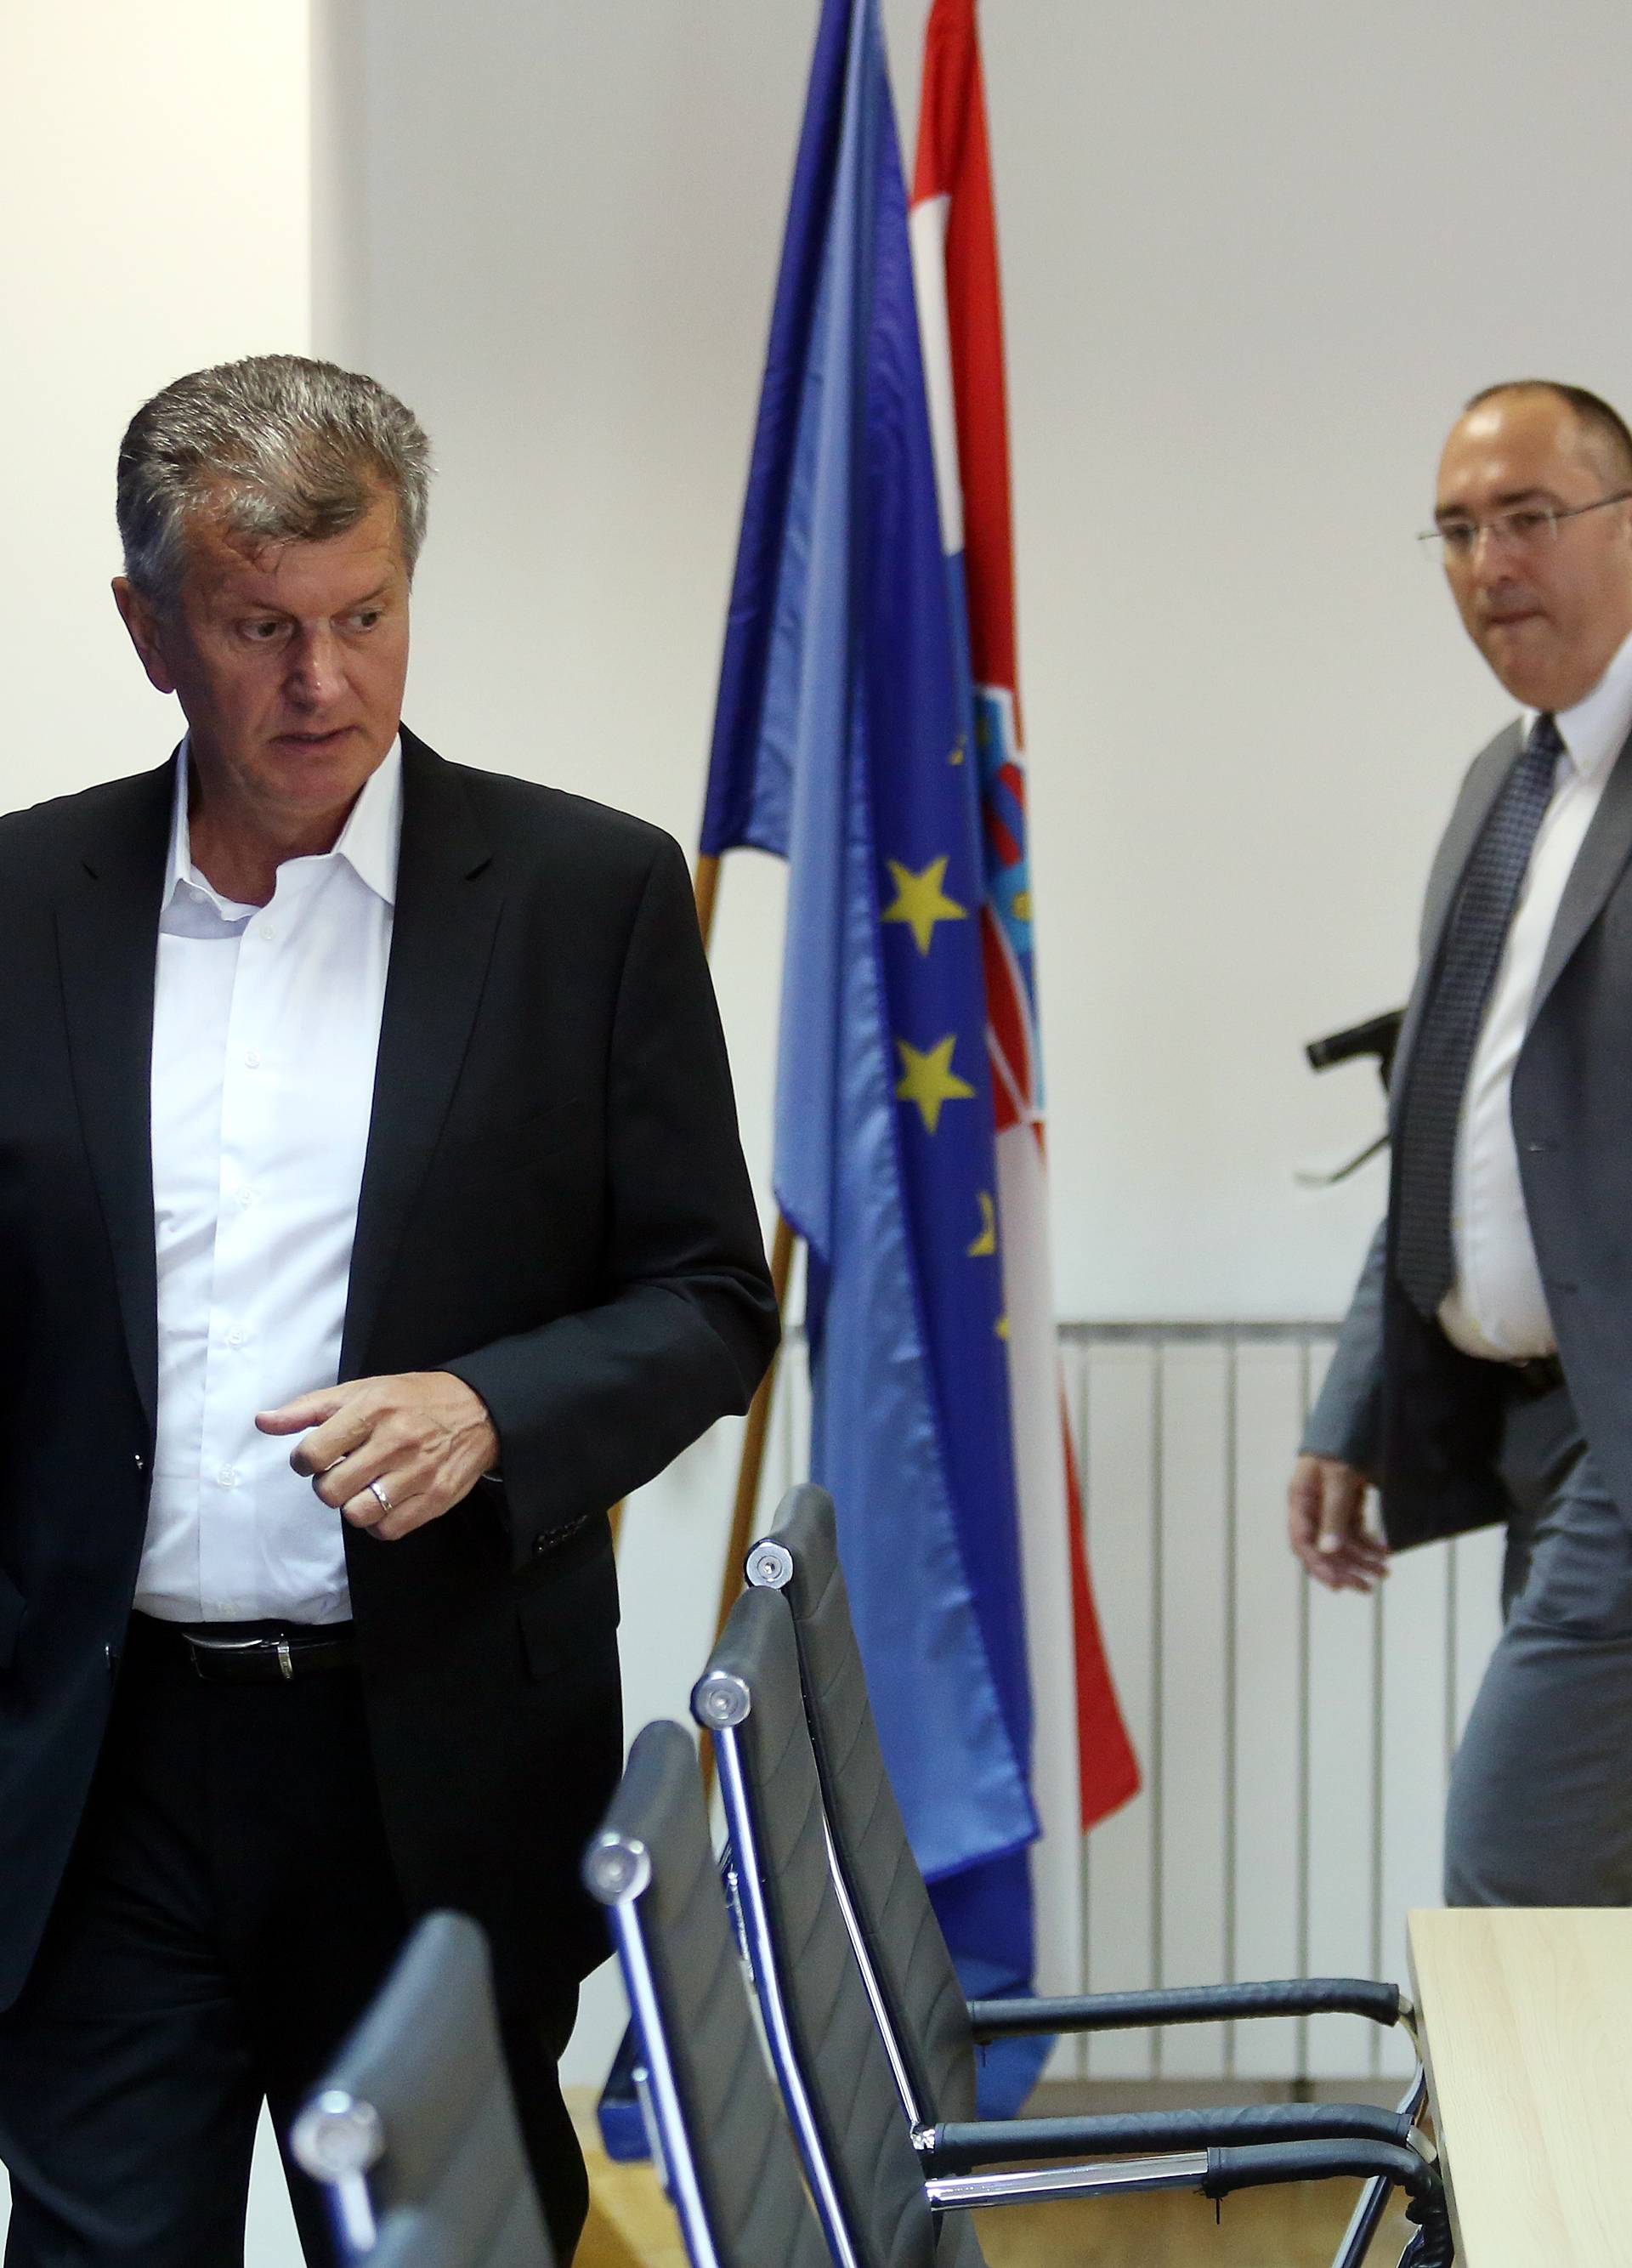 Zagreb: Ministar KujundÅ¾iÄ ne podnosi ostavku - sustav je funkcionirao prema regulativi